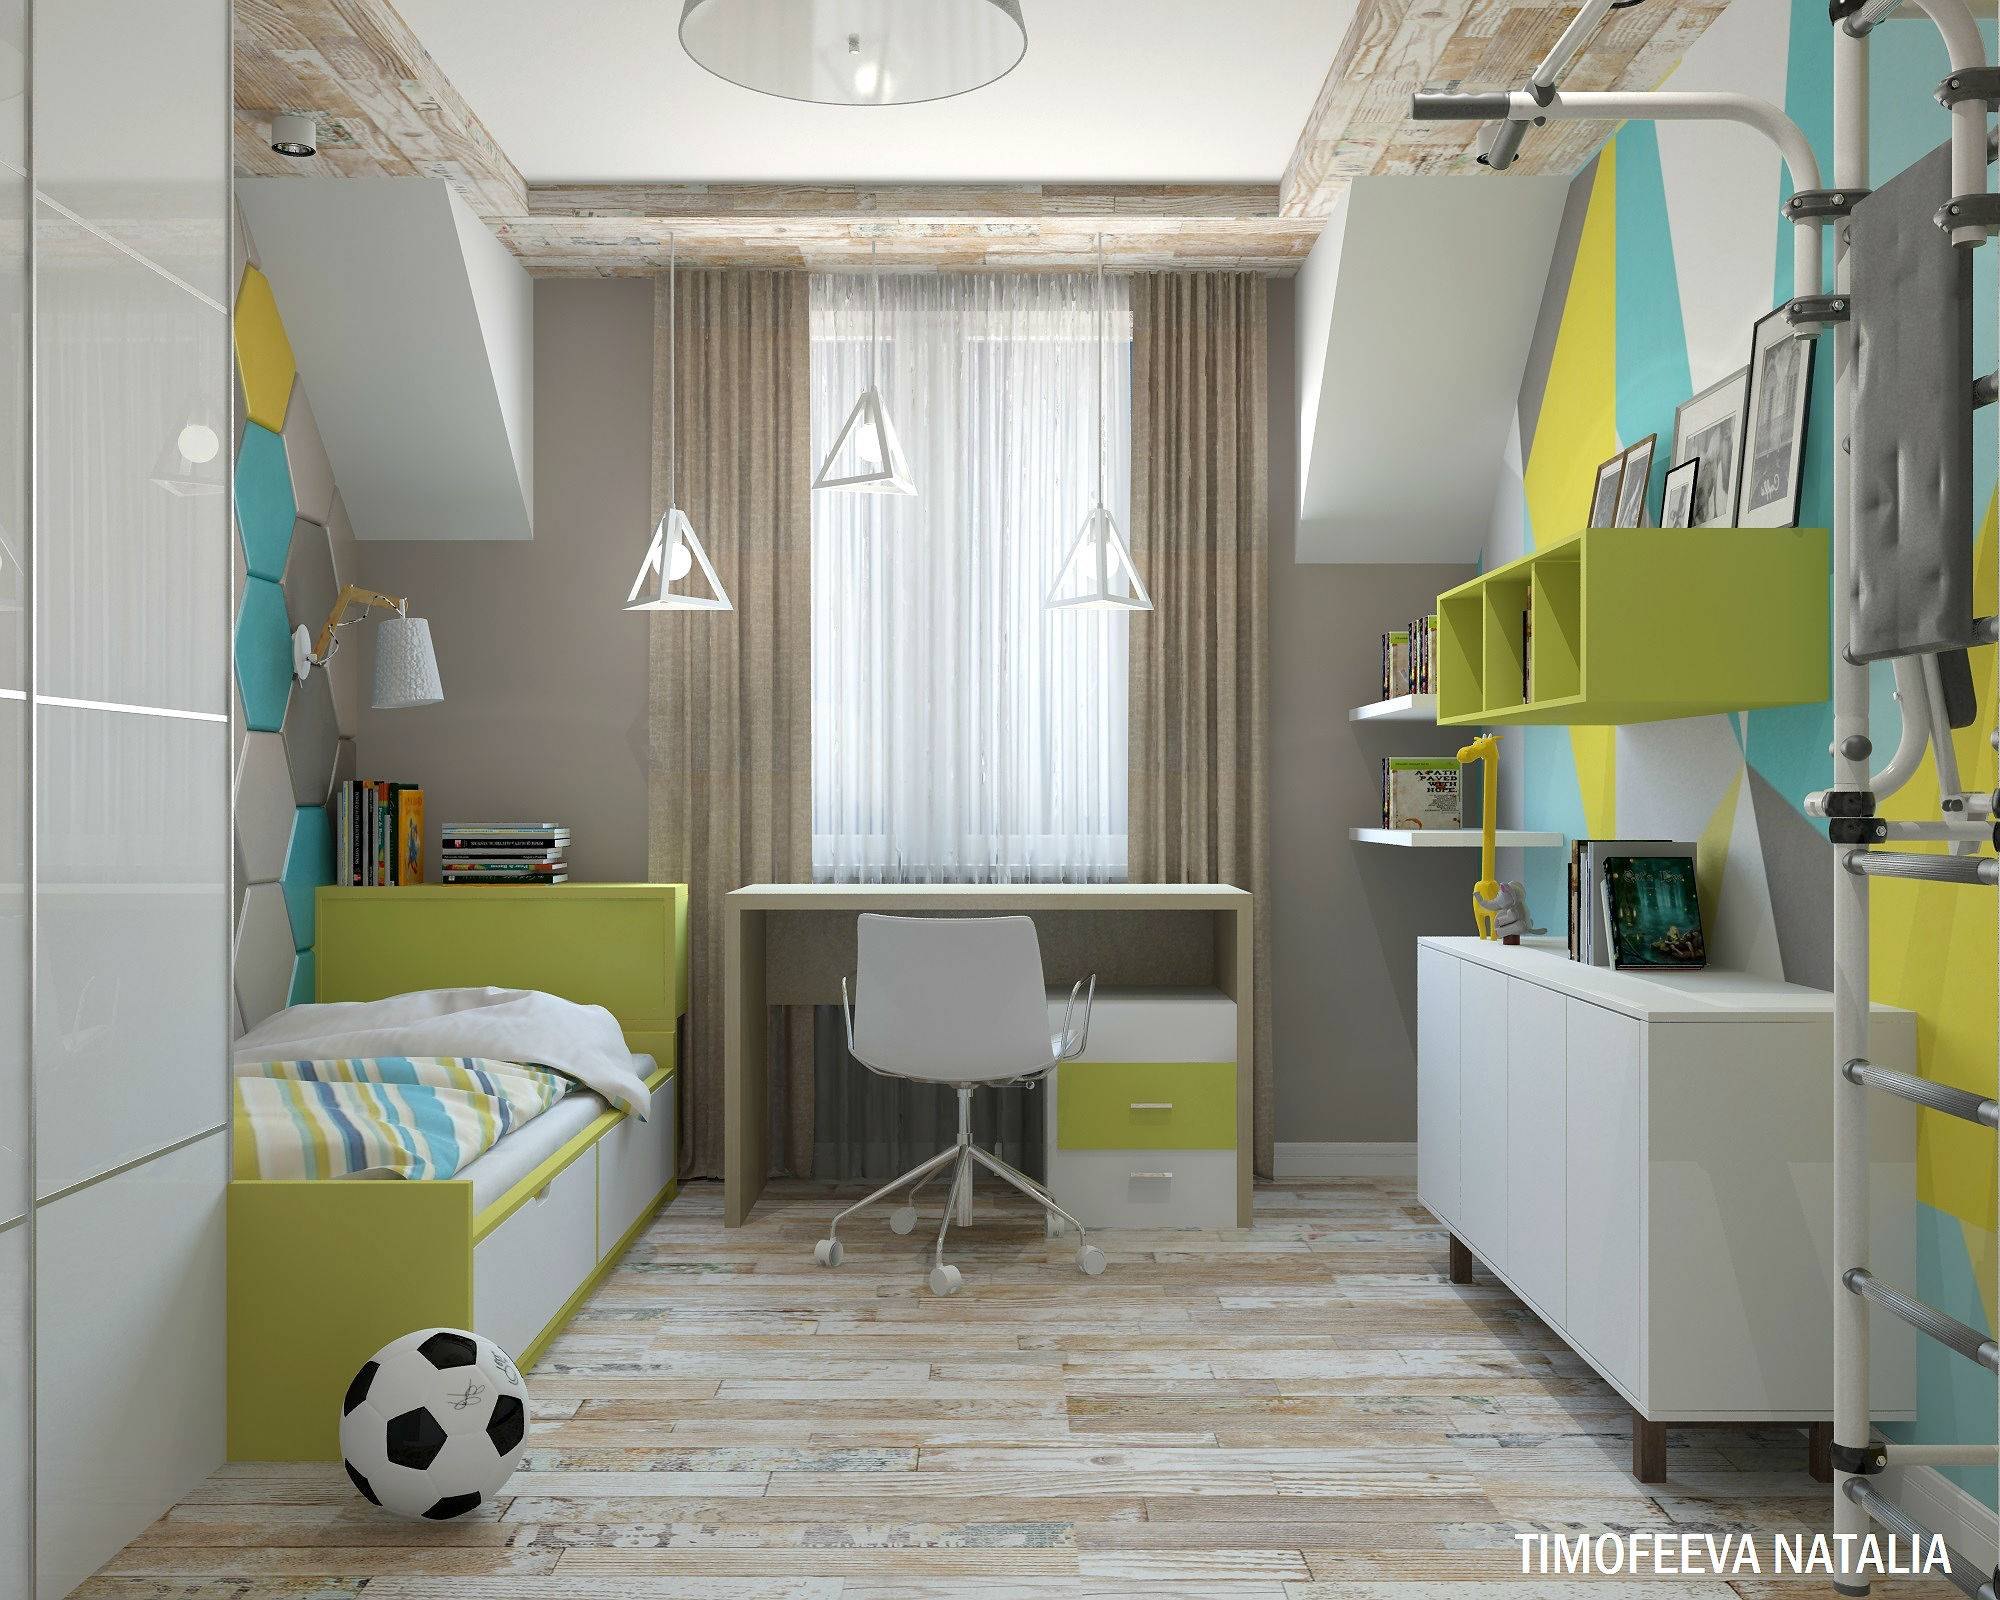 планировка детской комнаты 16 кв м для одного